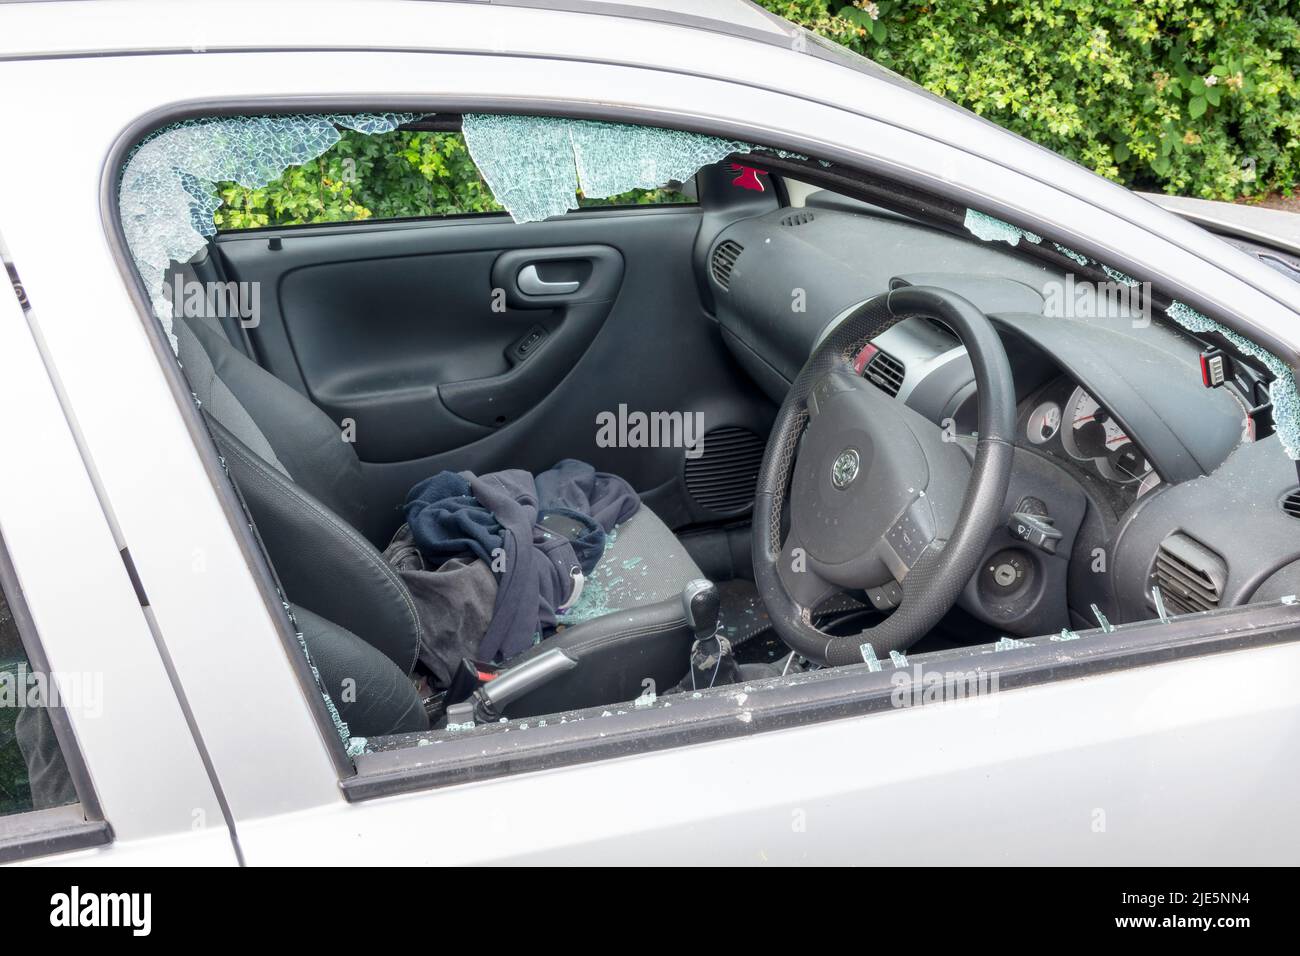 Une voiture avec sa fenêtre latérale conducteur a frappé après avoir été attaqué par un voleur. Une vitre brisée de la vitre est illustrée sur les sièges à l'intérieur du véhicule non sécurisé Banque D'Images